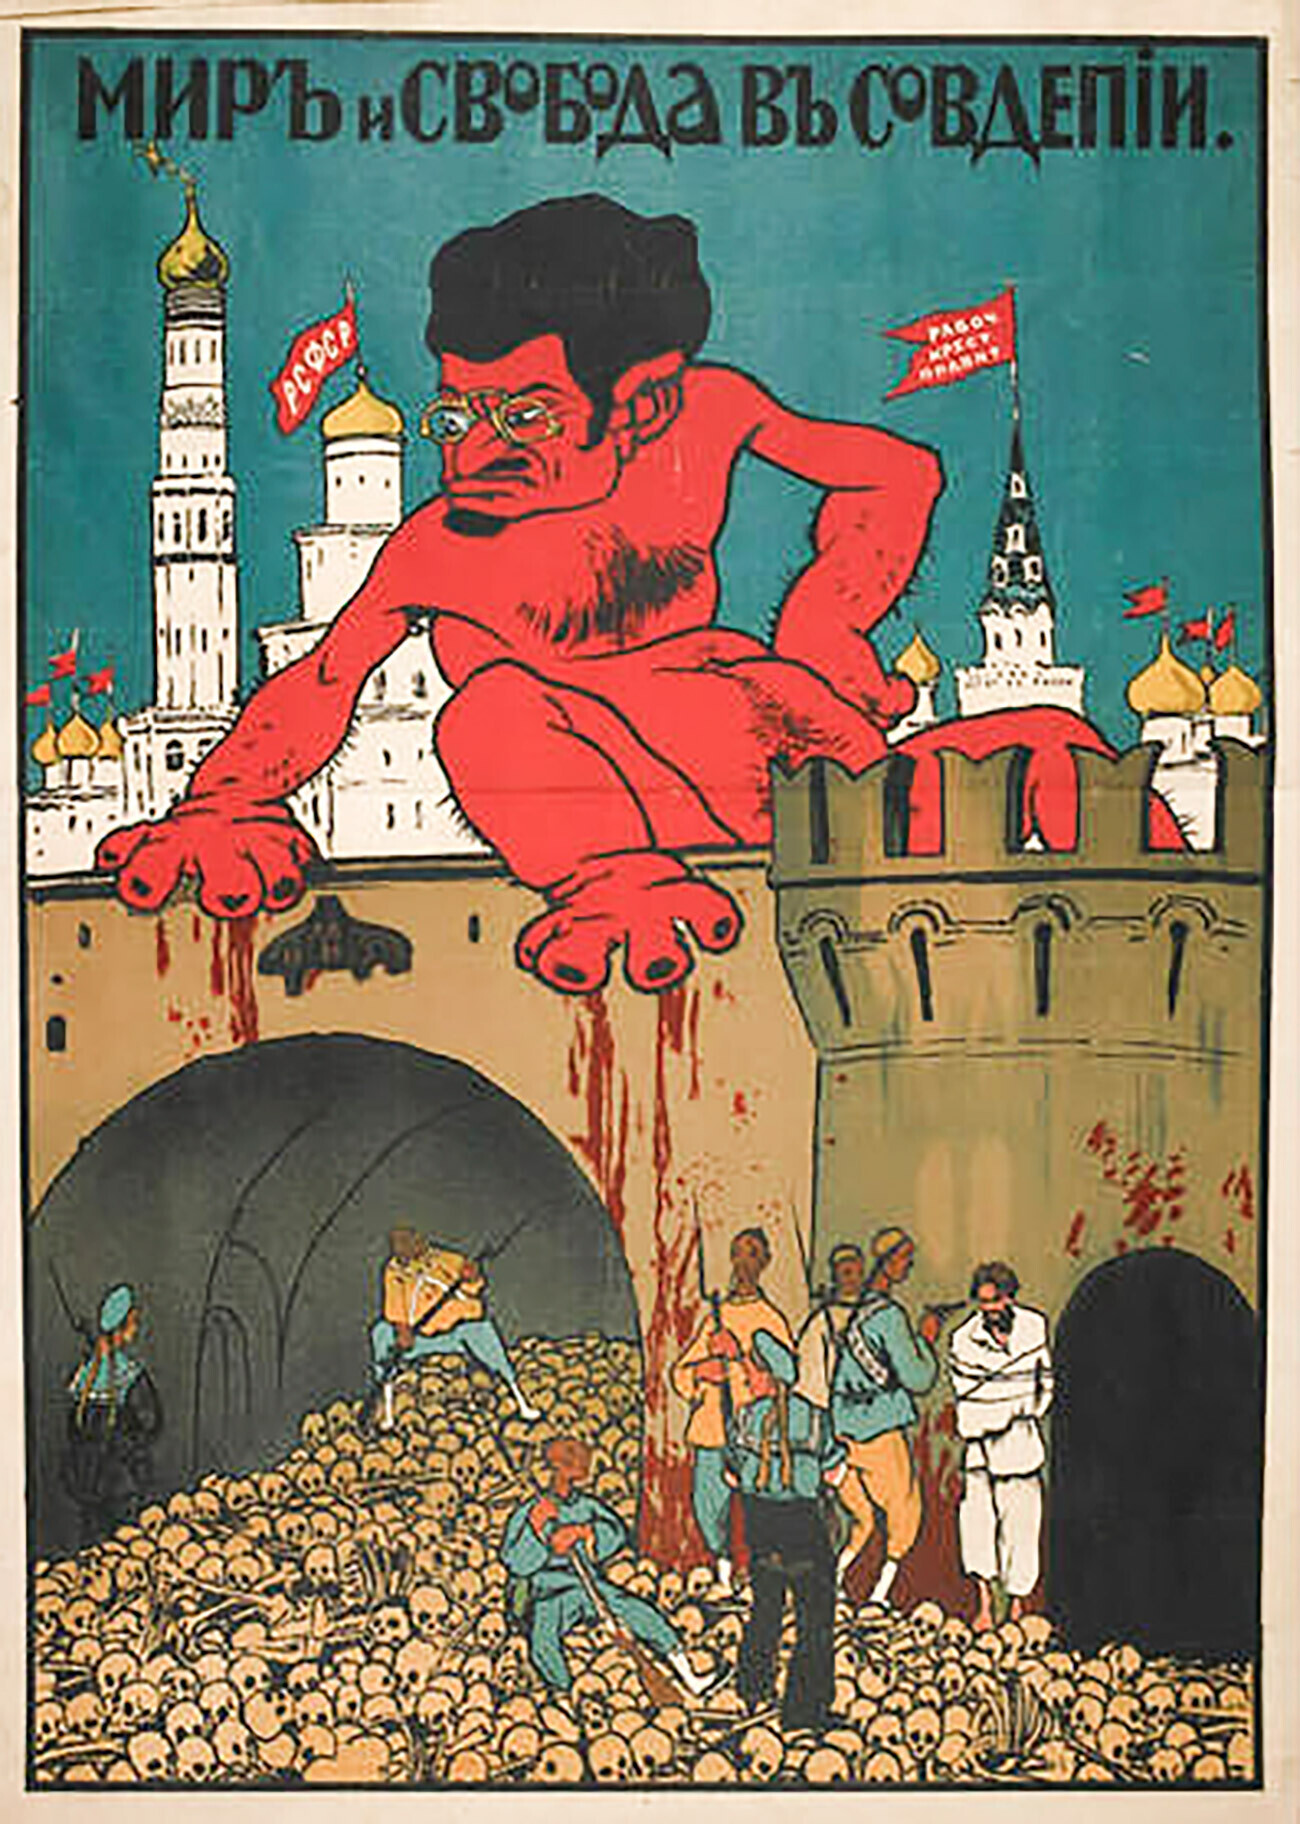 Karikatur di Trotsky, menggambarkan dia sebagai pembunuh massa yang kejam.